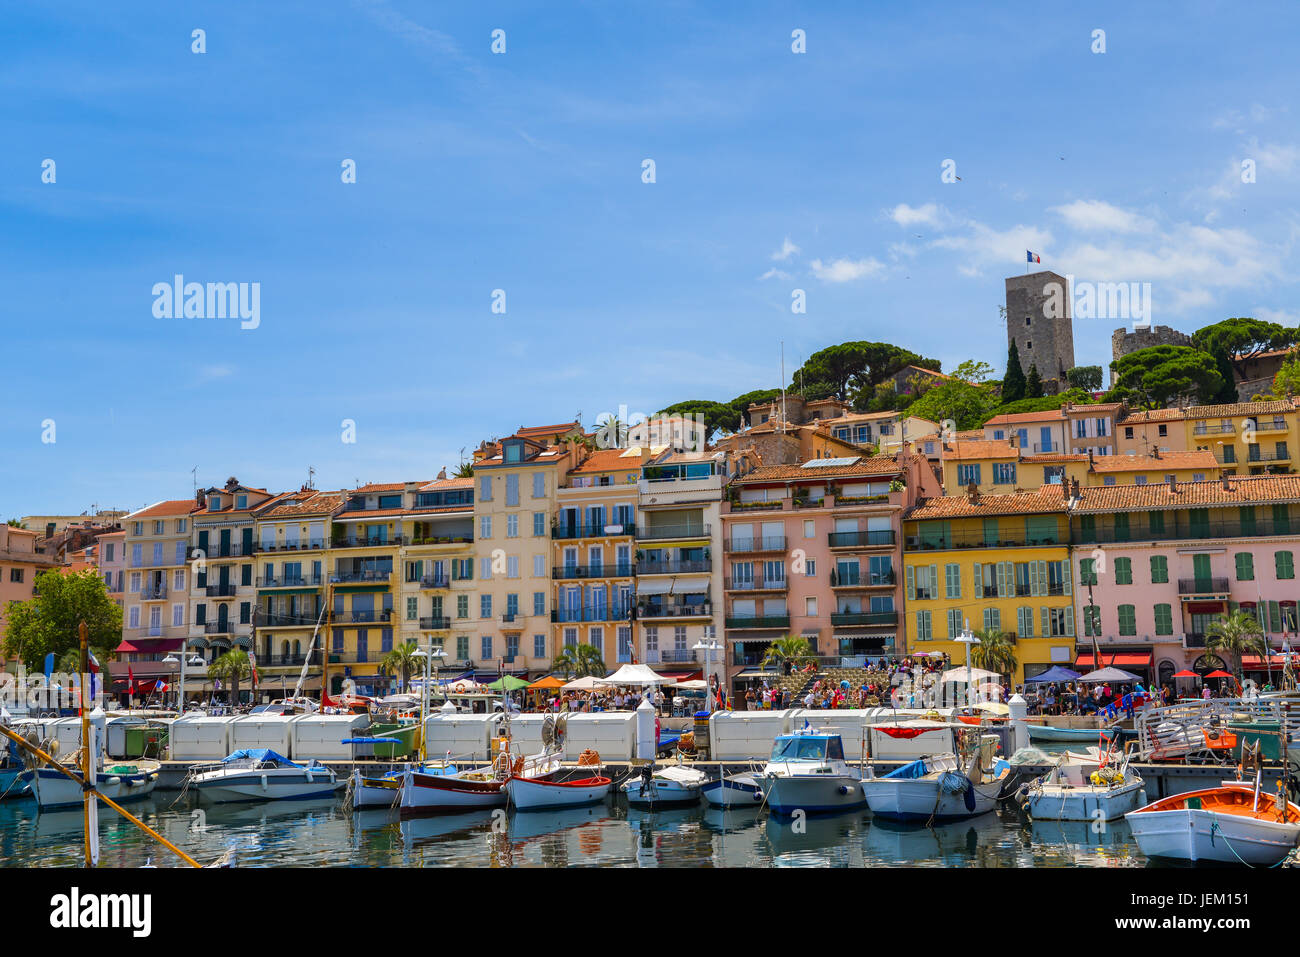 Europa, Francia, Alpes-Maritimes, Cannes. La ciudad vieja y el puerto viejo Foto de stock